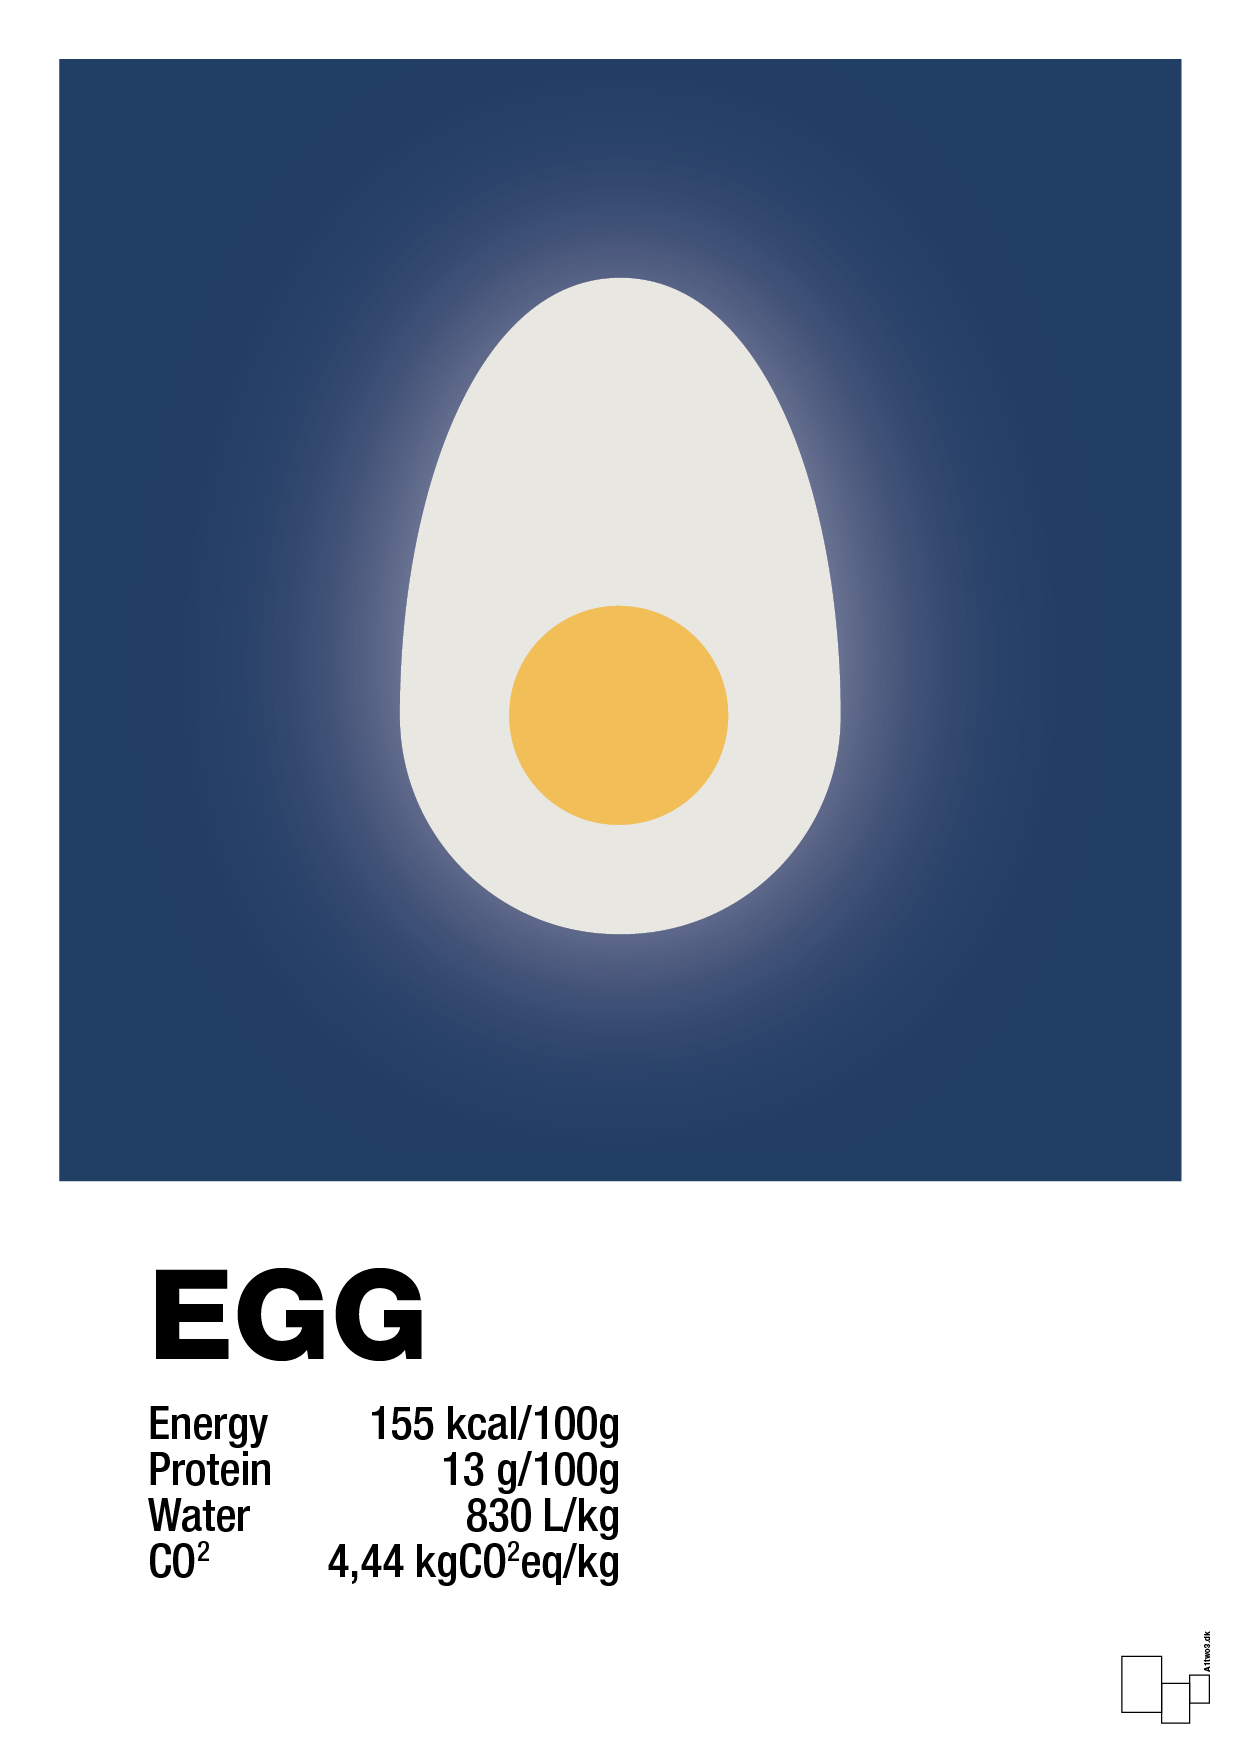 egg nutrition og miljø - Plakat med Mad & Drikke i Lapis Blue